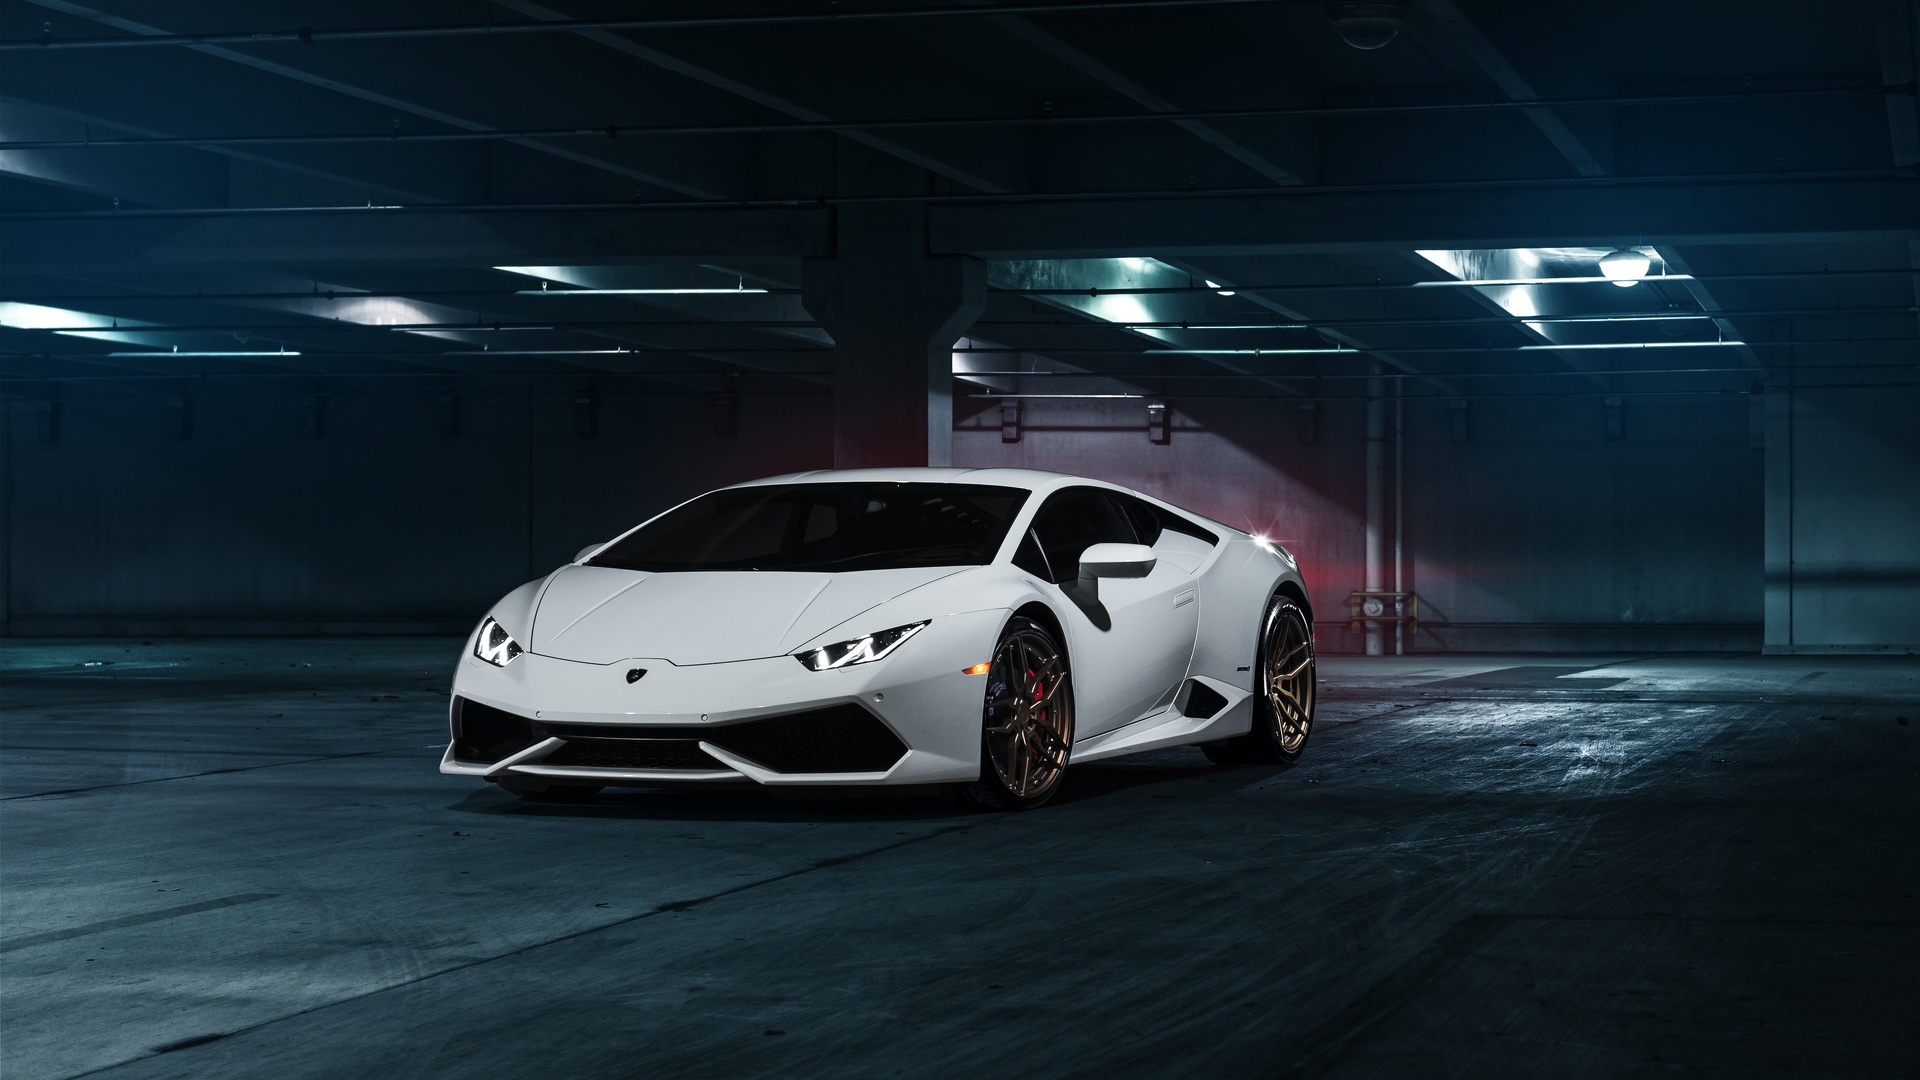 Fond d'écran Lamborghini Huracan.jpg